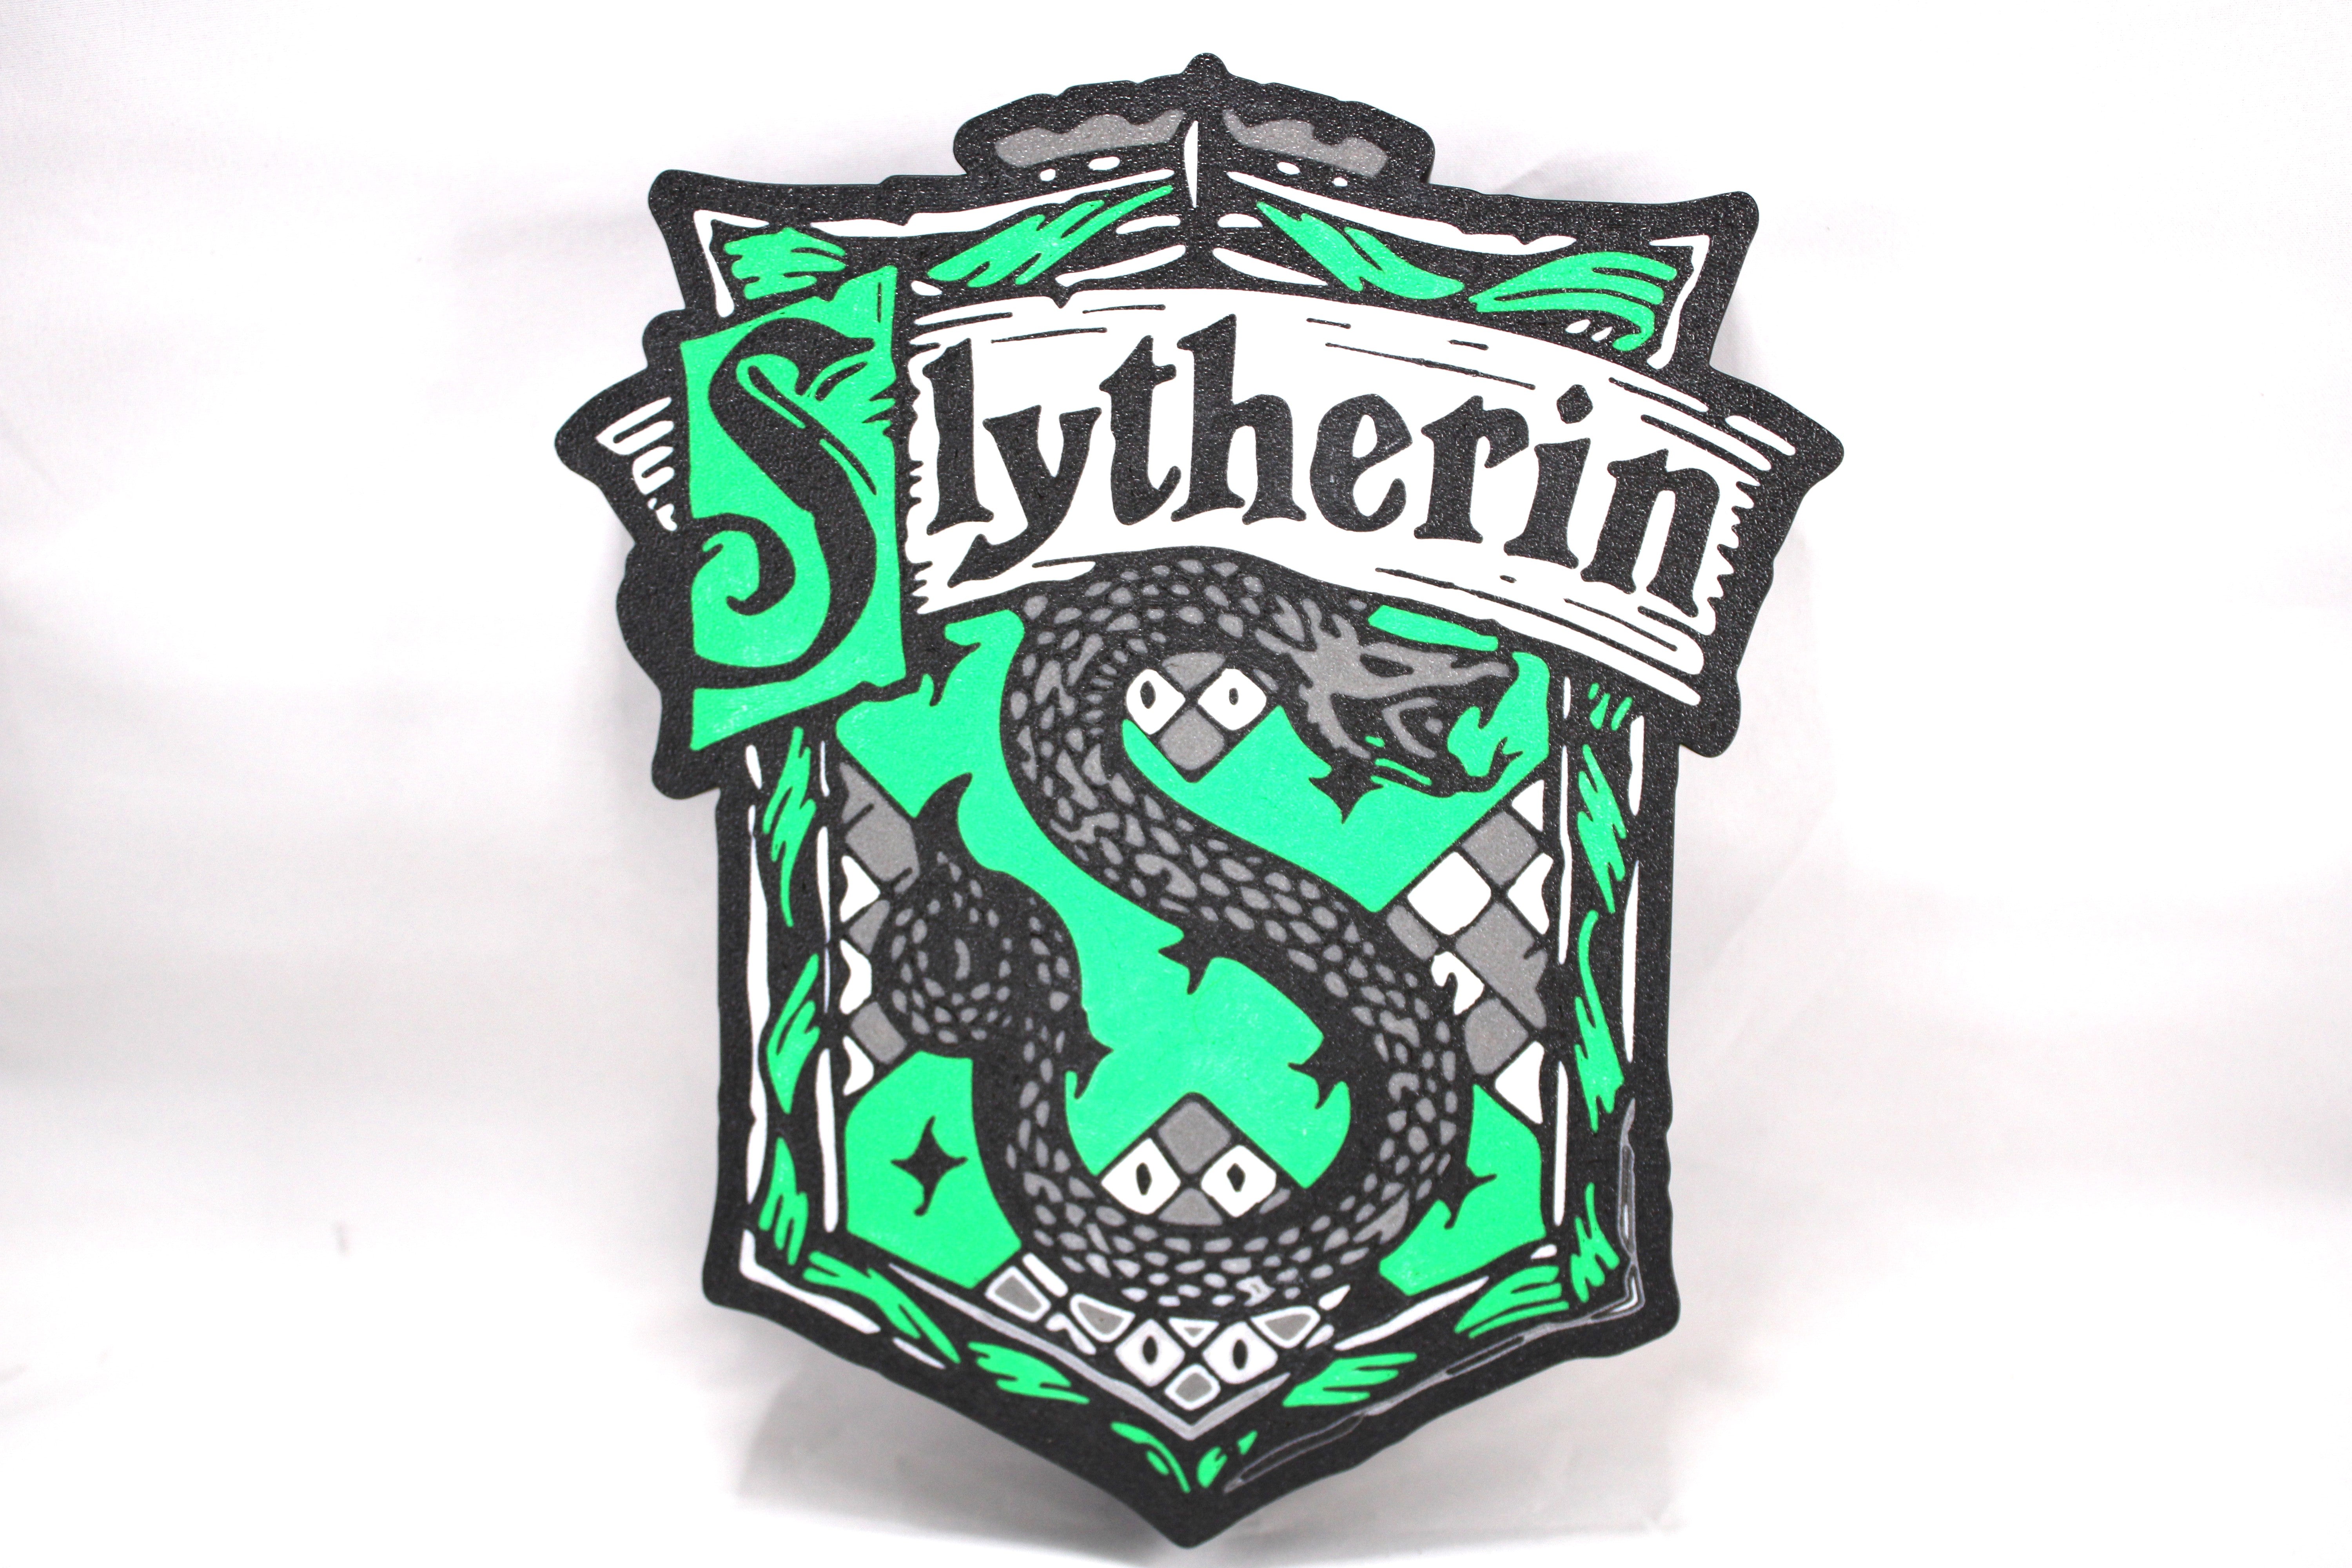 Slytherin Light Box